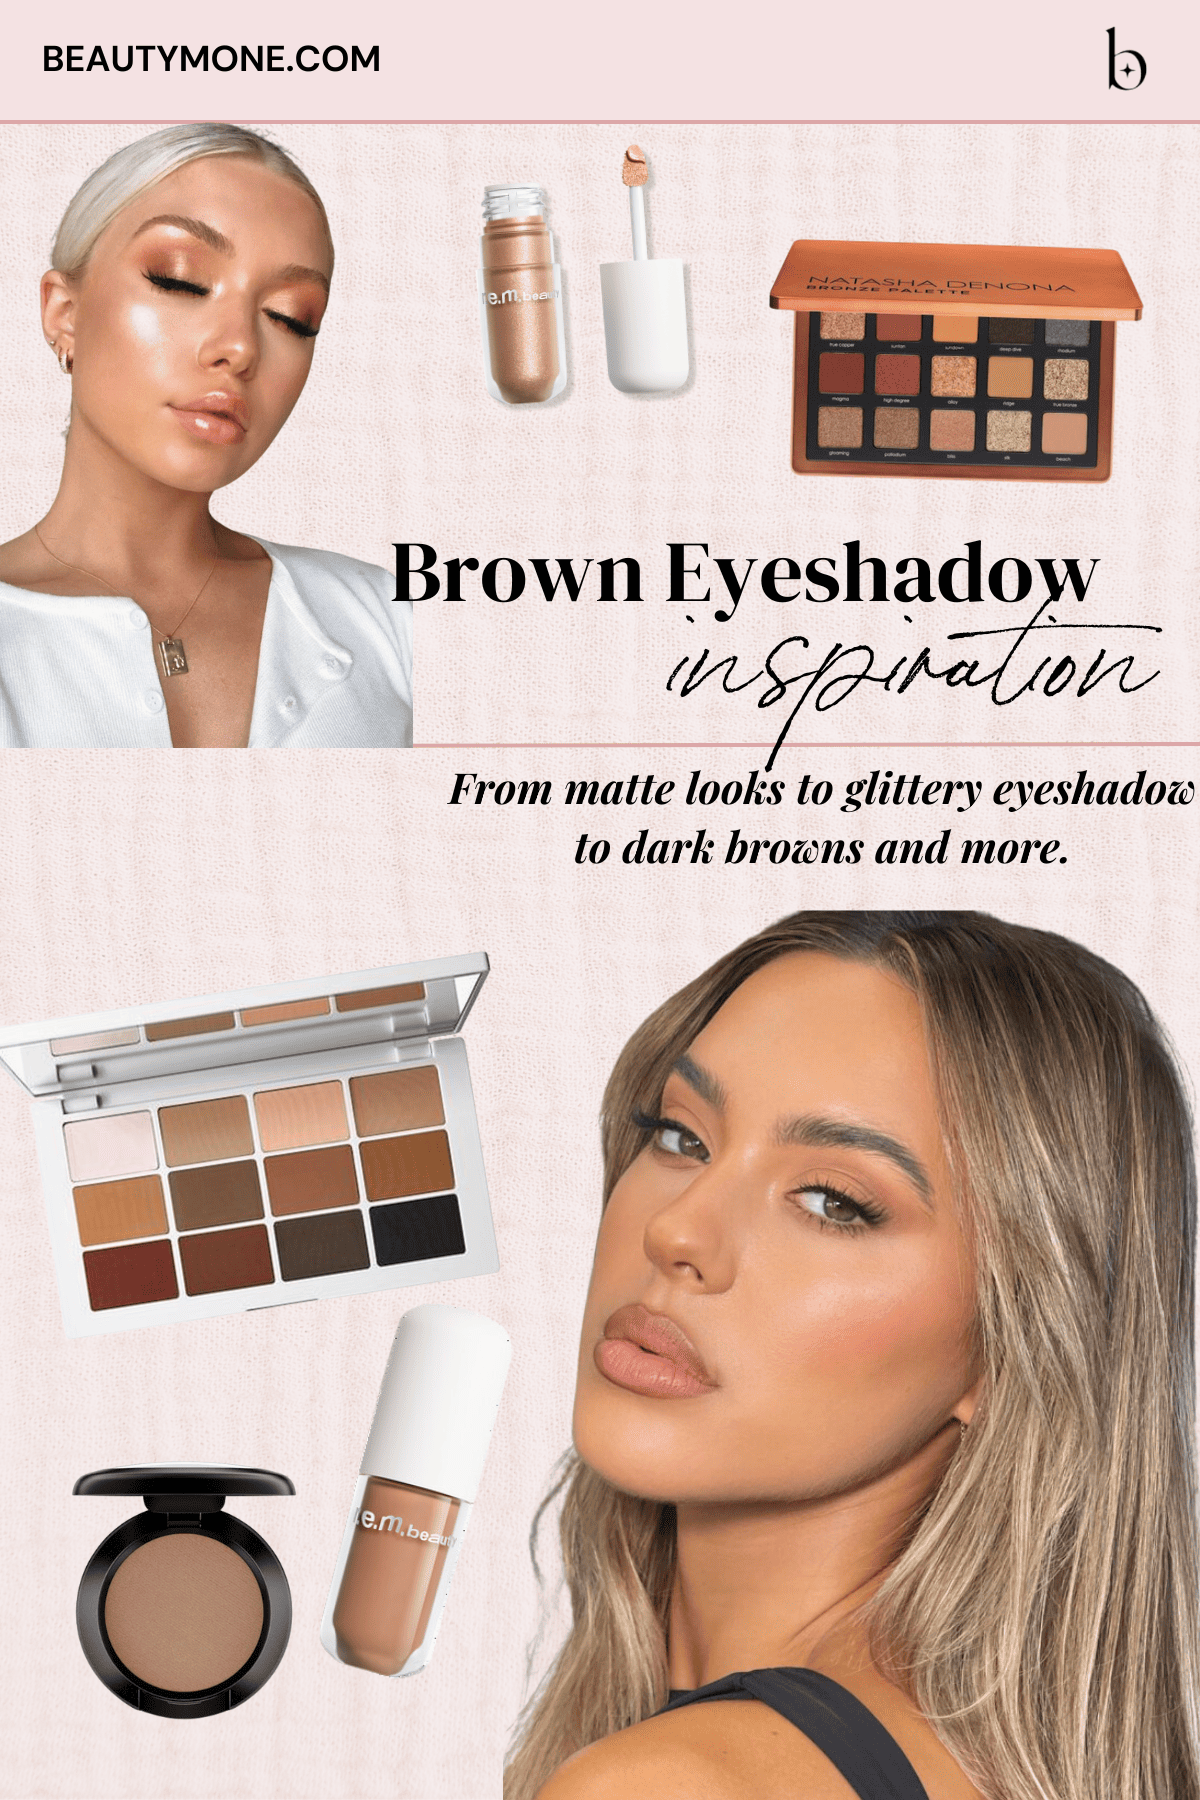 Brown Eyeshadow Looks